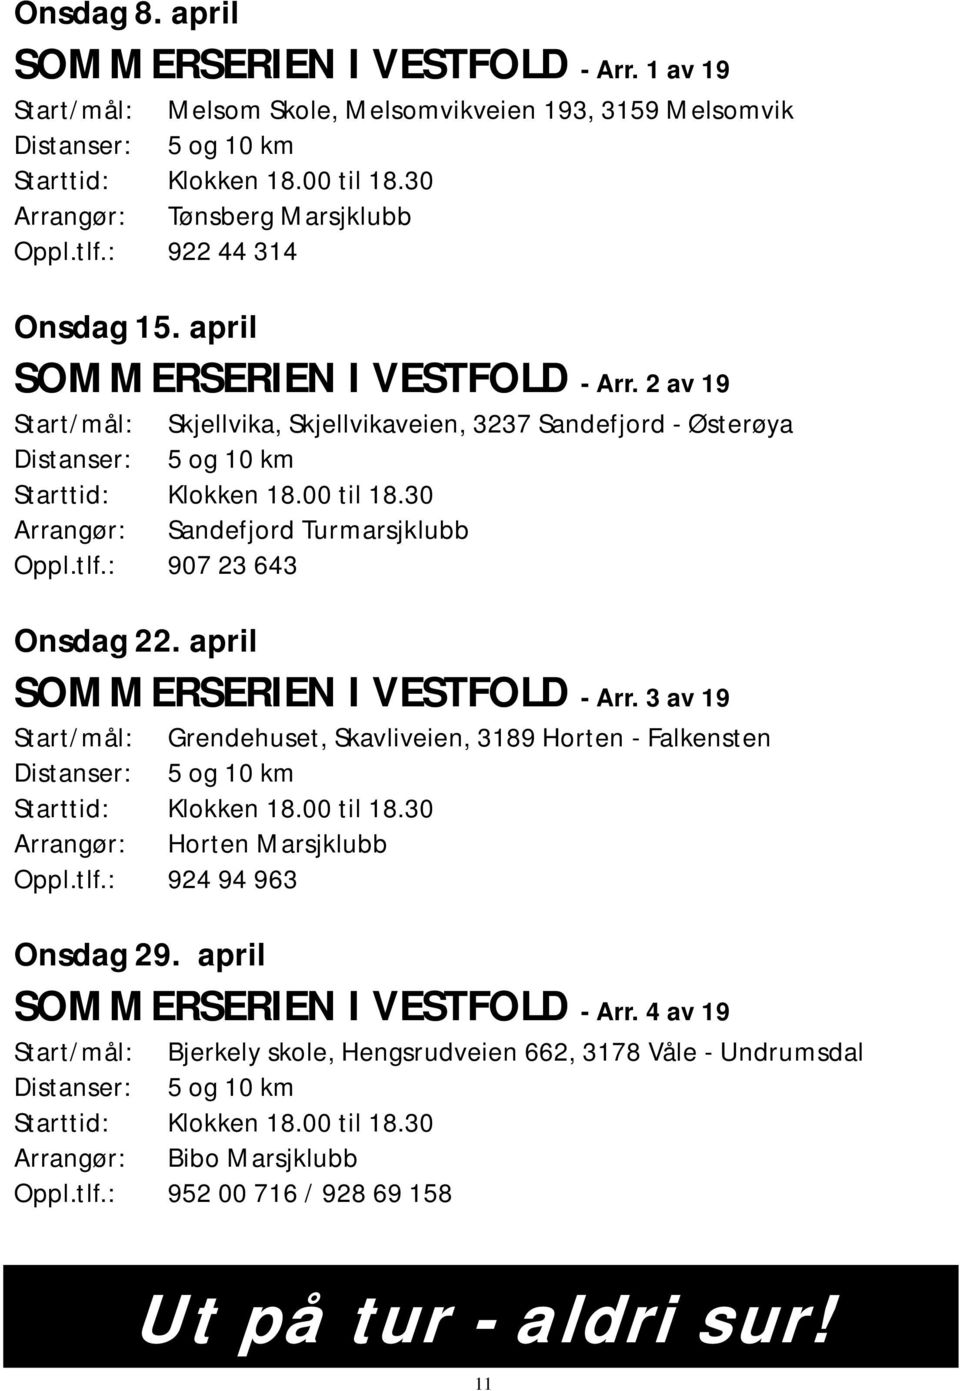 30 Arrangør: Sandefjord Turmarsjklubb Oppl.tlf.: 907 23 643 Onsdag 22. april SOMMERSERIEN I VESTFOLD - Arr. 3 av 19 Start/mål: Grendehuset, Skavliveien, 3189 Horten - Falkensten Starttid: Klokken 18.